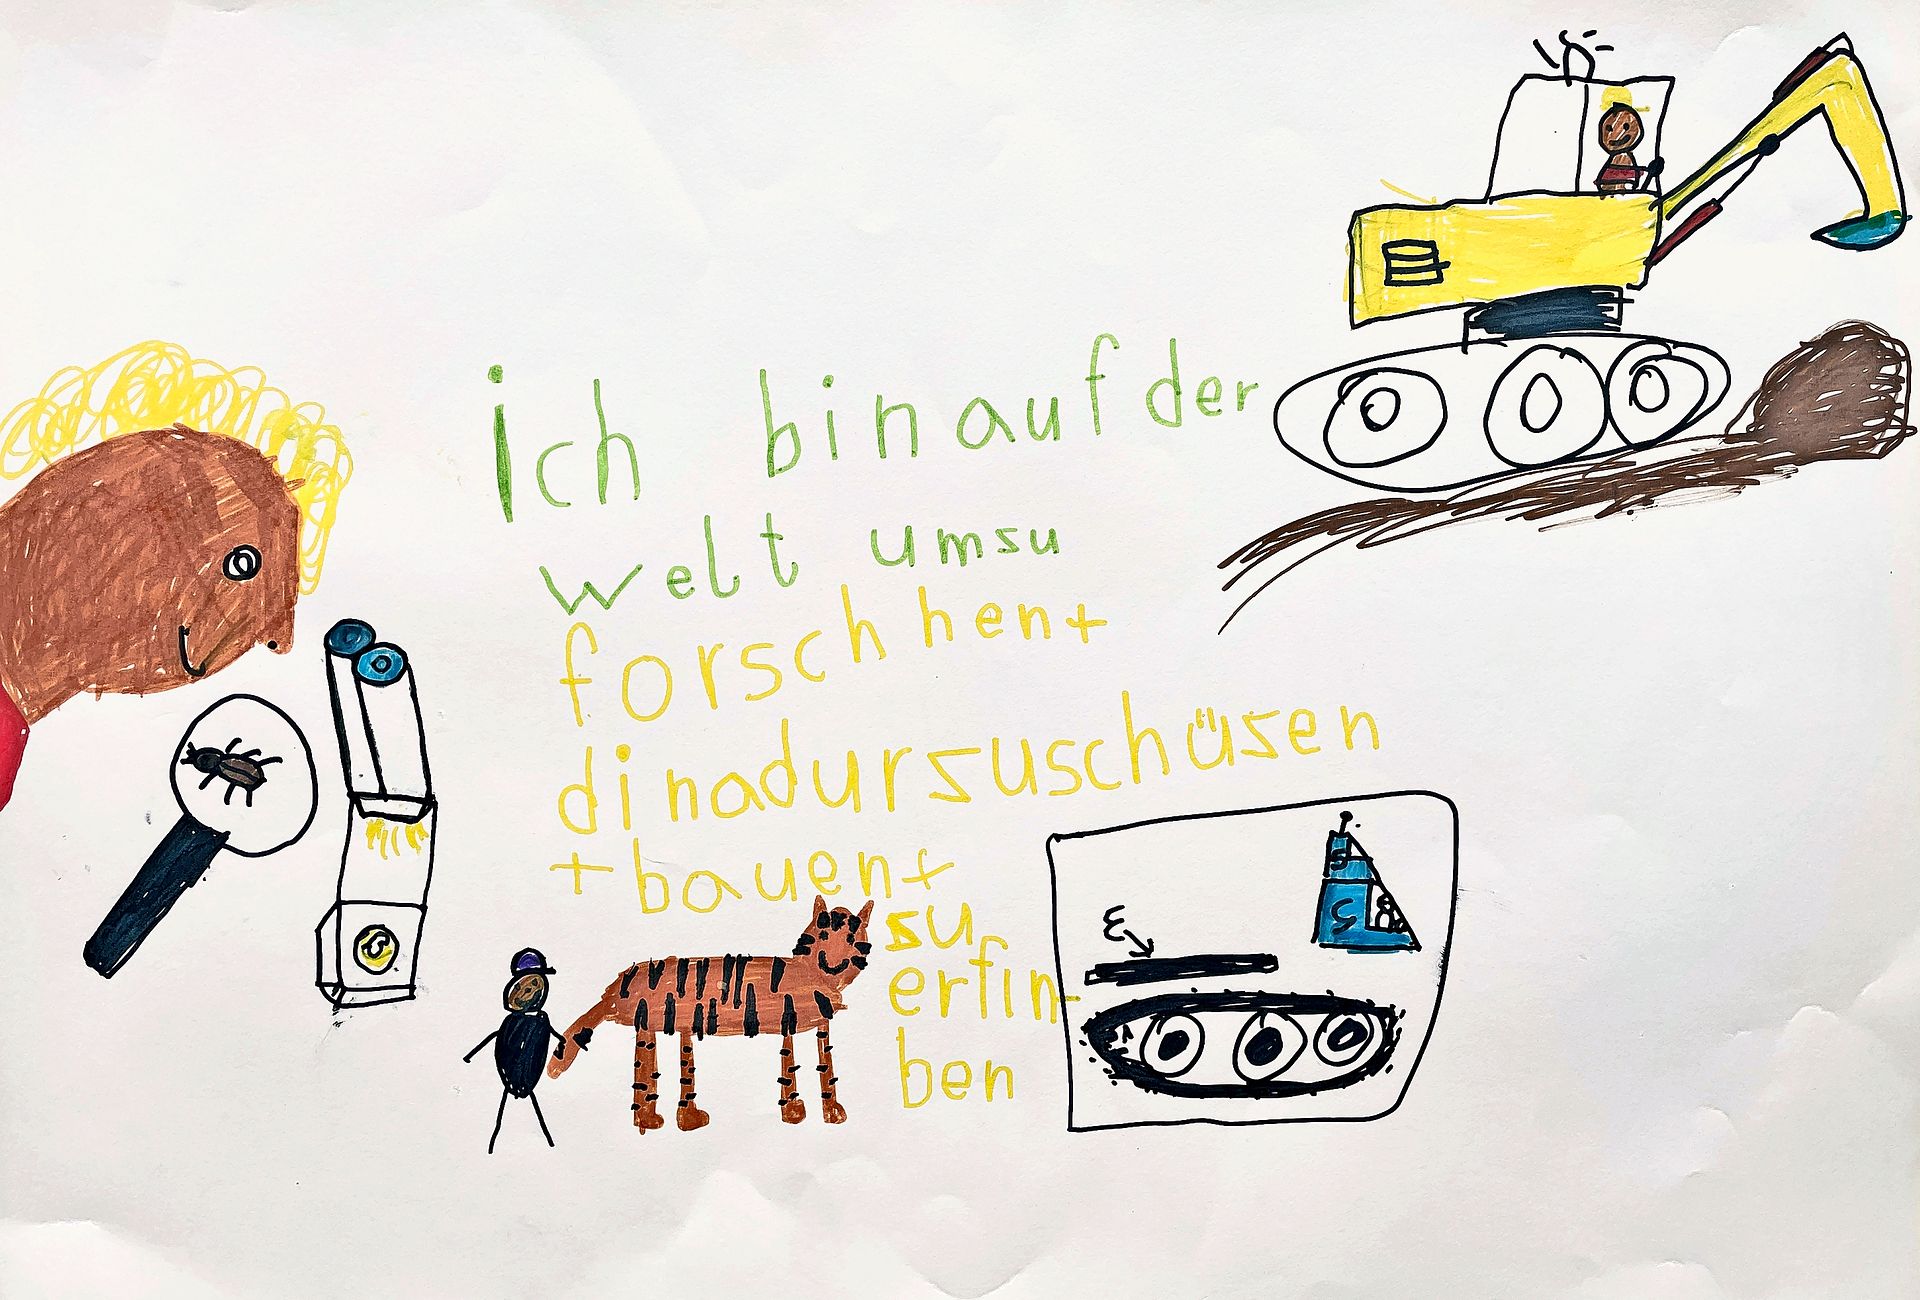 Kinderzeichnung mit Bagger, Mikroskop und Katze. Text in fehlerhafter Rechtschreibung: "Ich bin auf der Welt umzu forschen und di Nadur zu schüzen und bauen und zu erfinben.